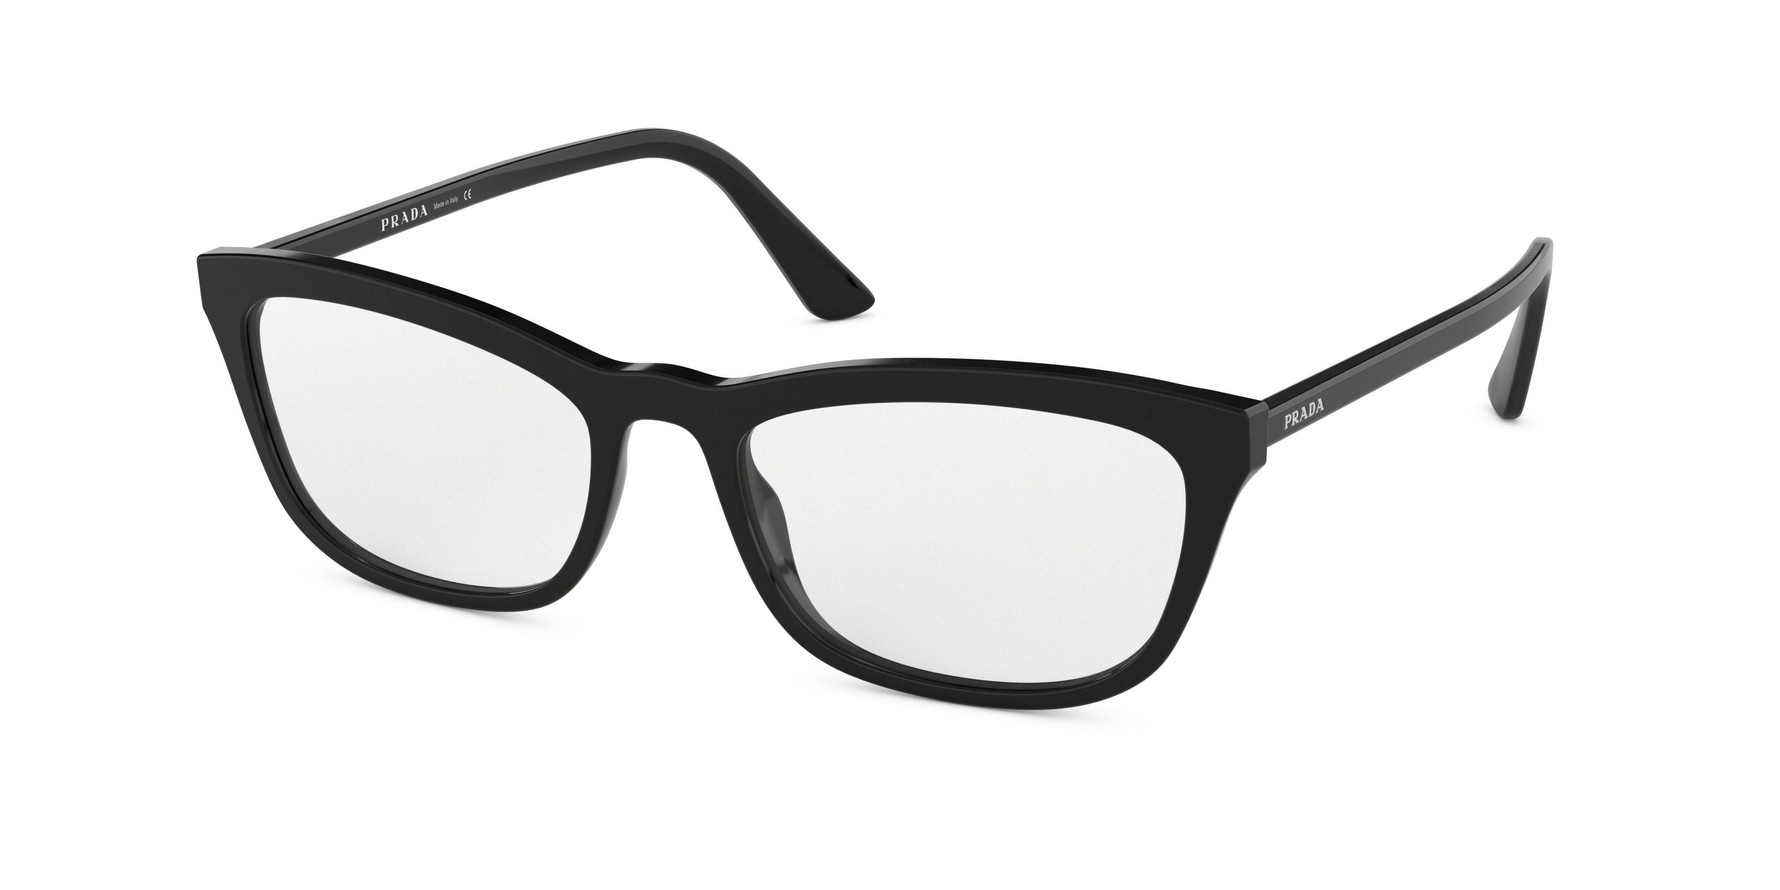 Prada PR 10VVF CONCEPTUAL Eyeglasses - Prada Authorized Retailer ...